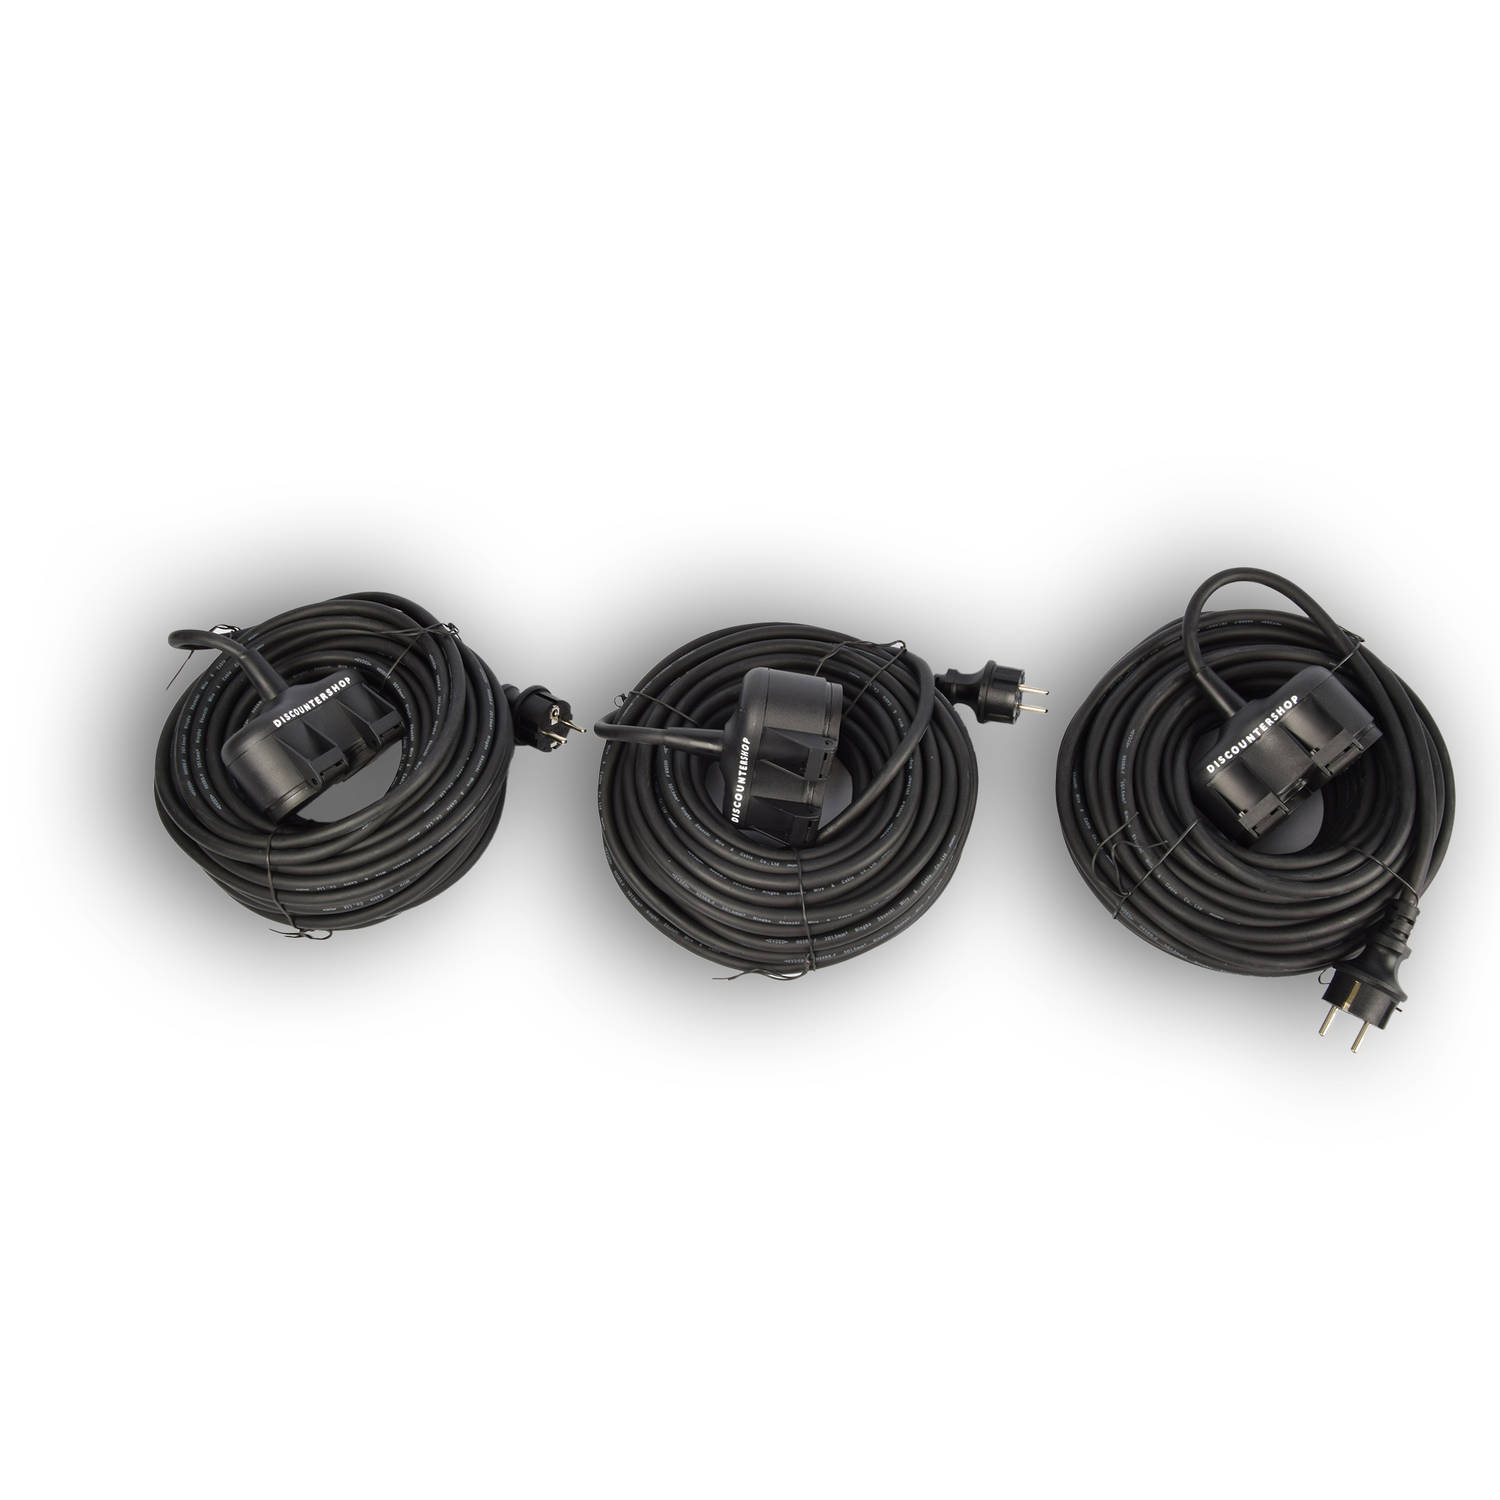 3x Robuust Rubber Verlengsnoer met 2 stopcontacten - cable - 3G1.5MM² - Zwarte - Max 3500 Watt, 20m Kabellengte - IP44 -